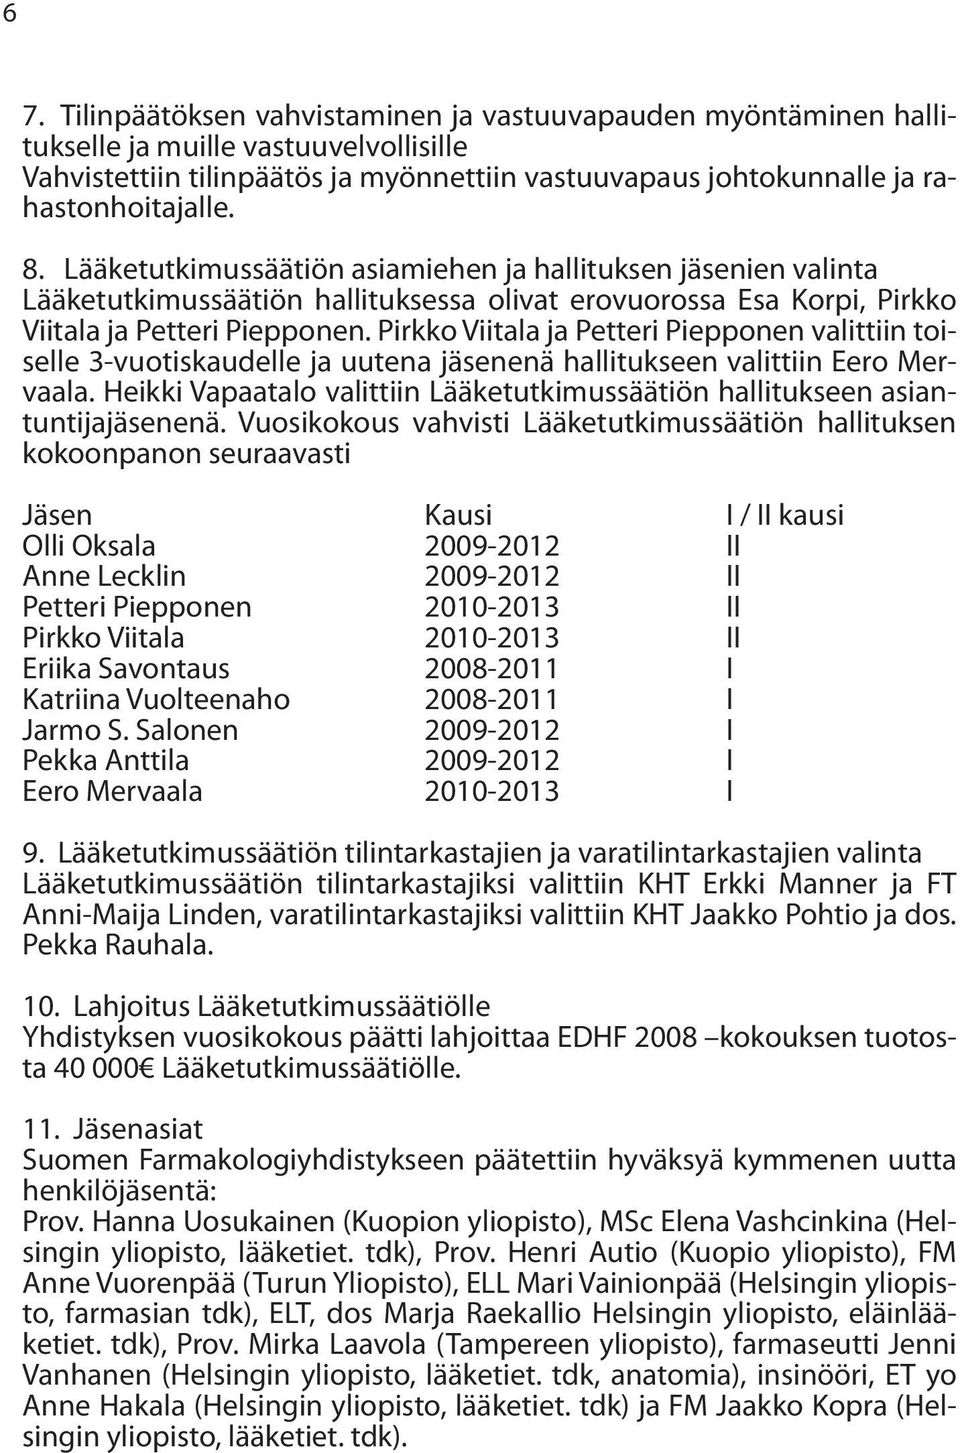 Pirkko Viitala ja Petteri Piepponen valittiin toiselle 3-vuotiskaudelle ja uutena jäsenenä hallitukseen valittiin Eero Mervaala.